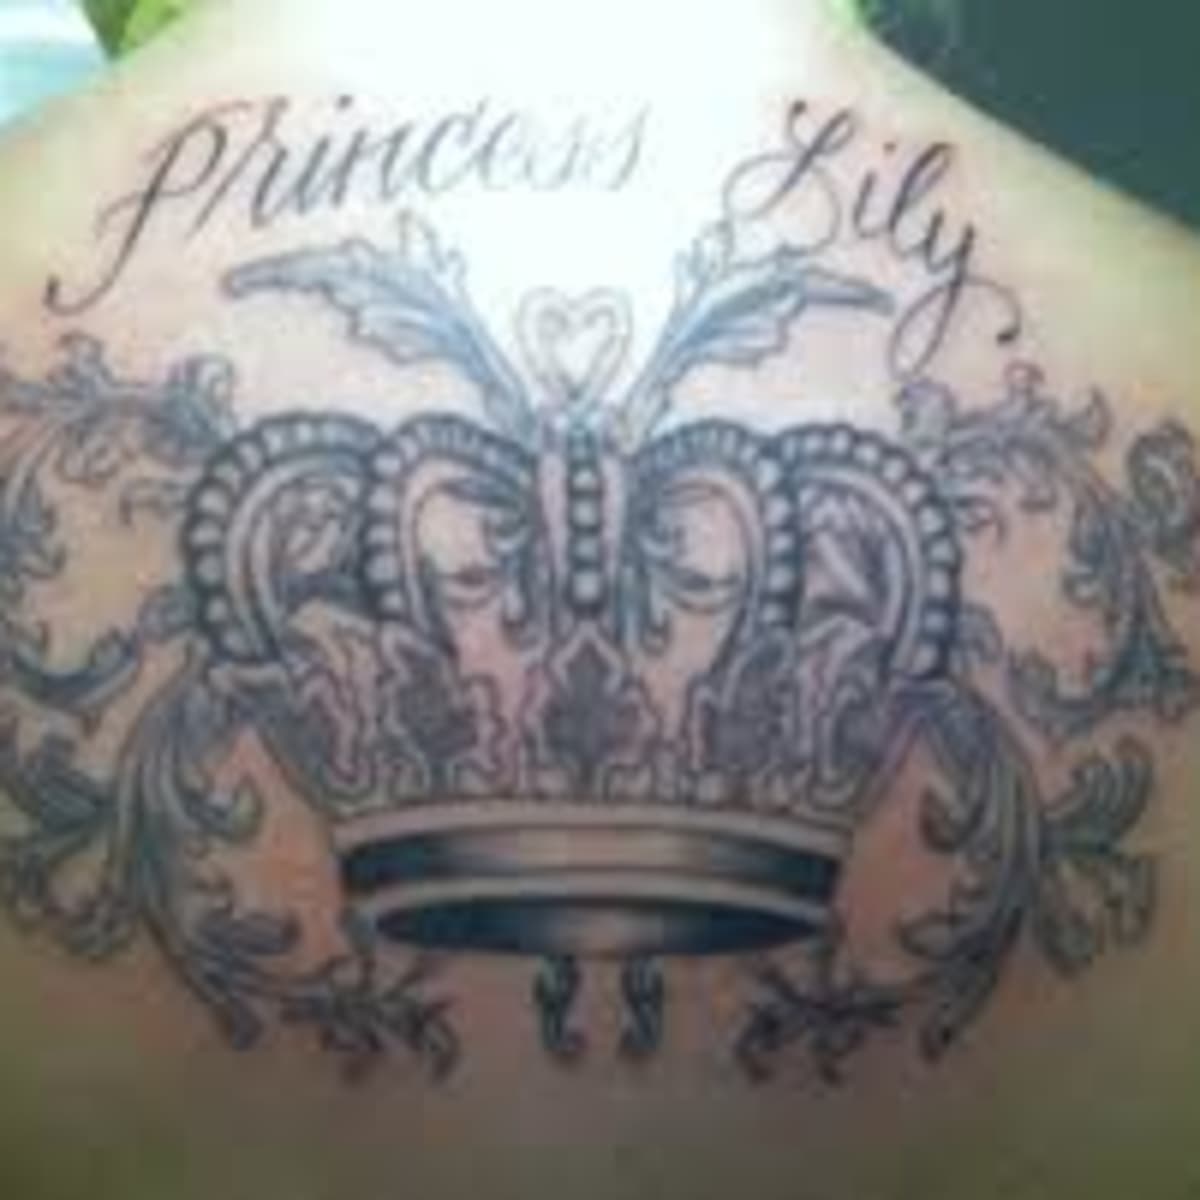 B with crown tattoo by soldiersinktattoos on DeviantArt